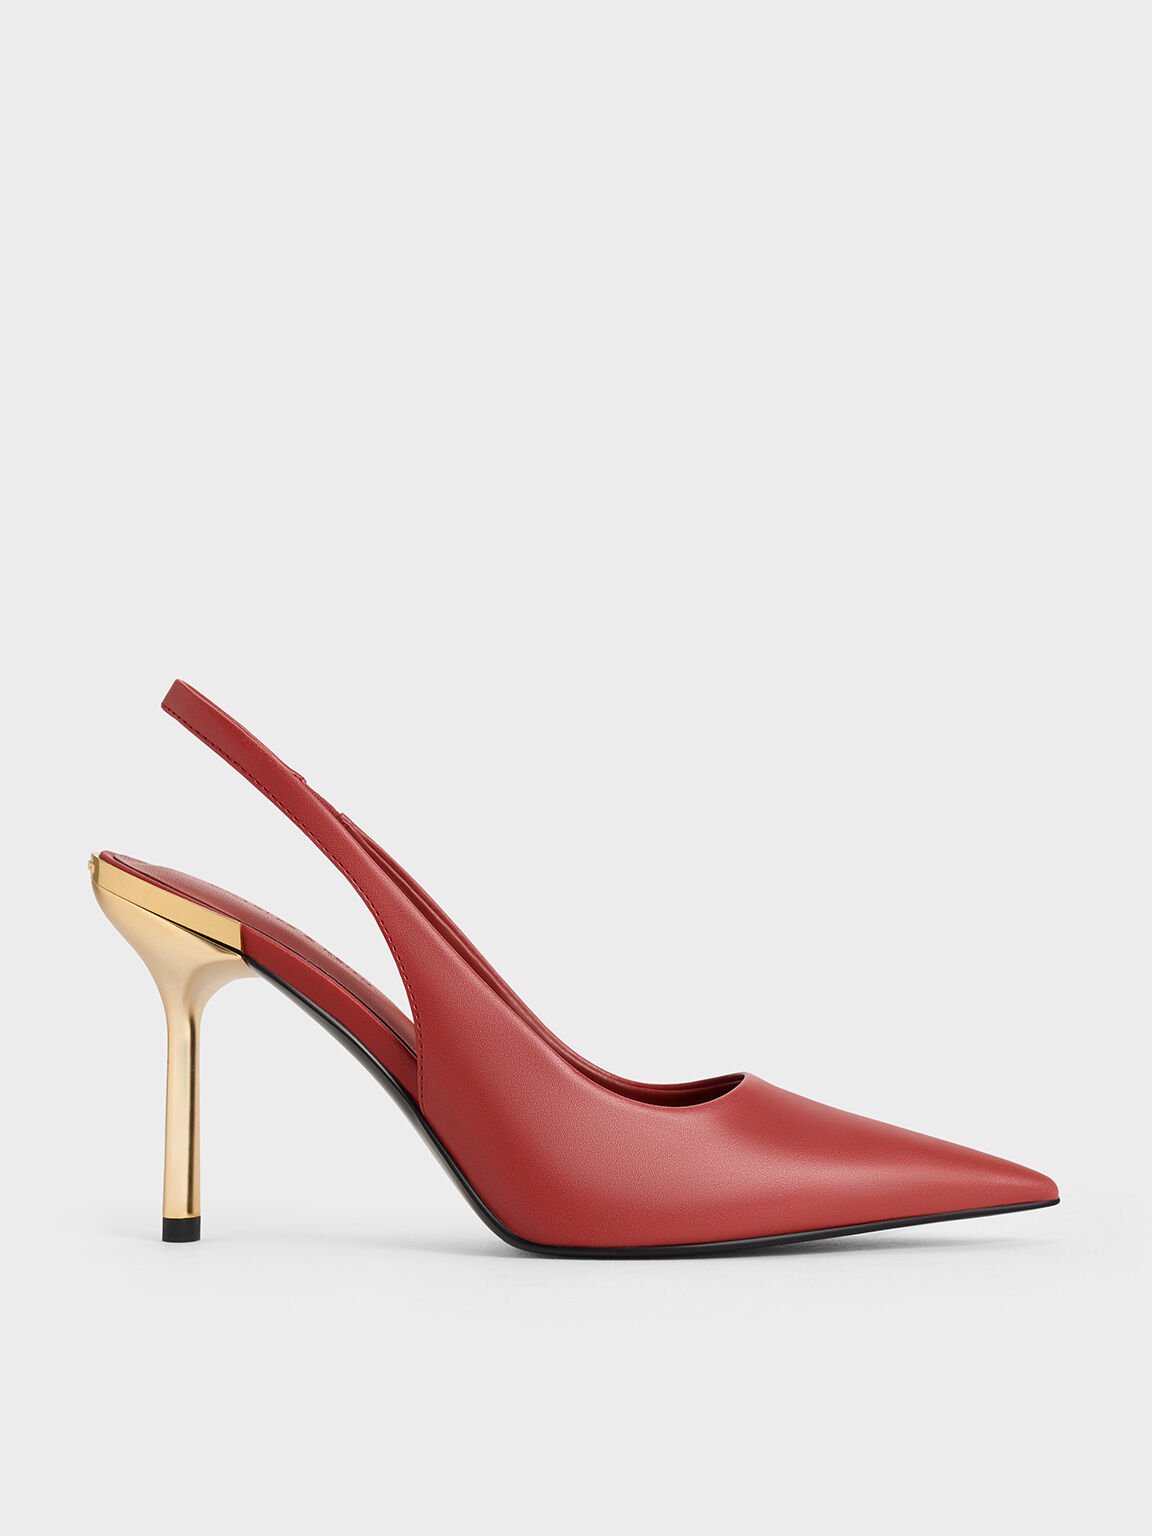 Zapatos destalonados metálicos de punta afilada con tacón de aguja, Rojo ladrillo, hi-res